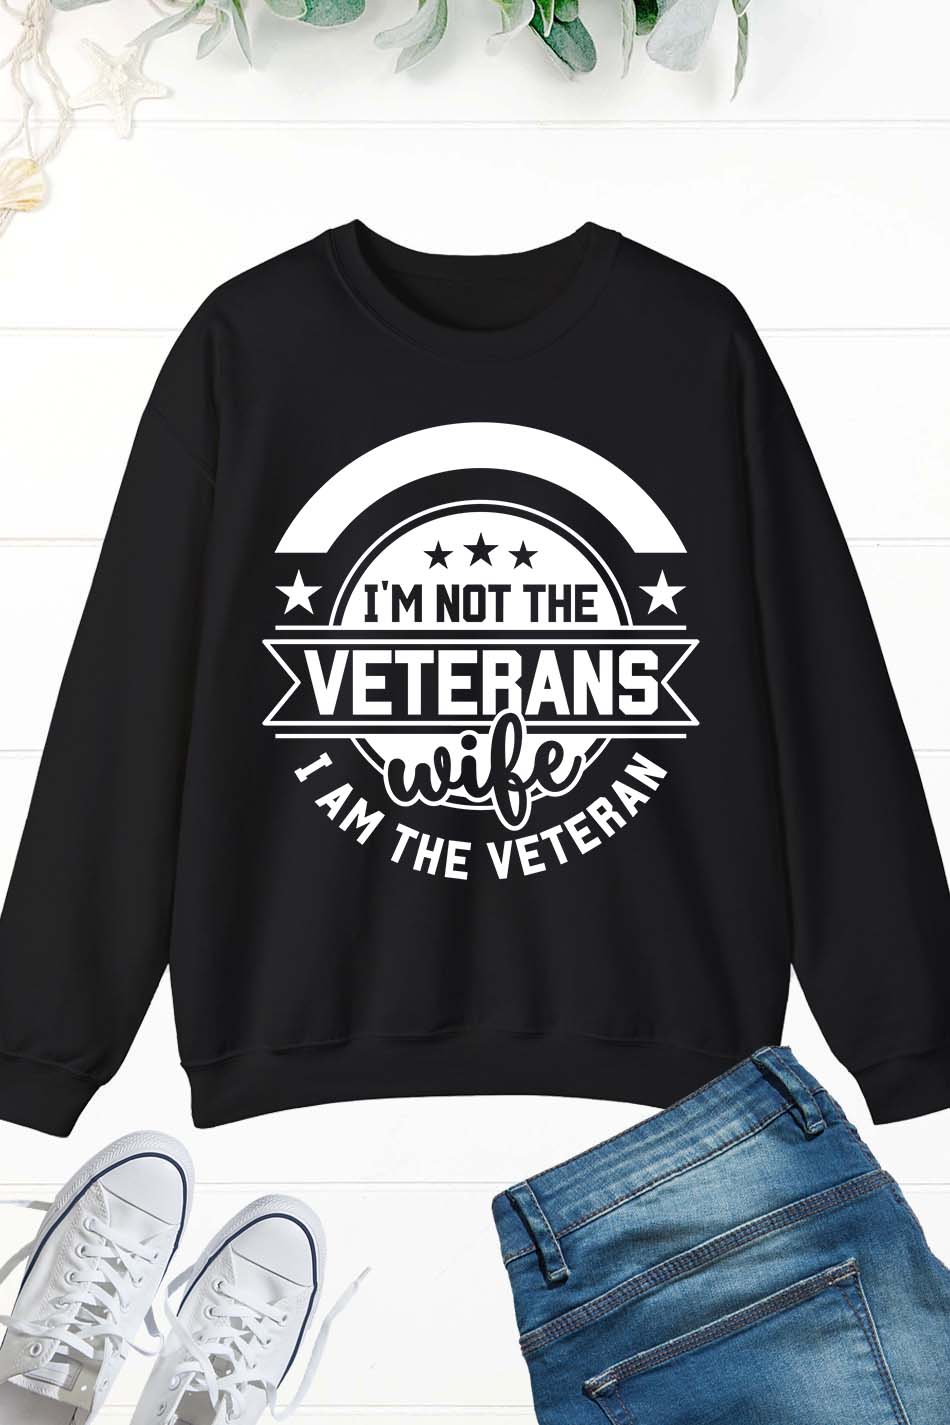 Veteran Wife Soldier Military Patriotic Sweatshirt